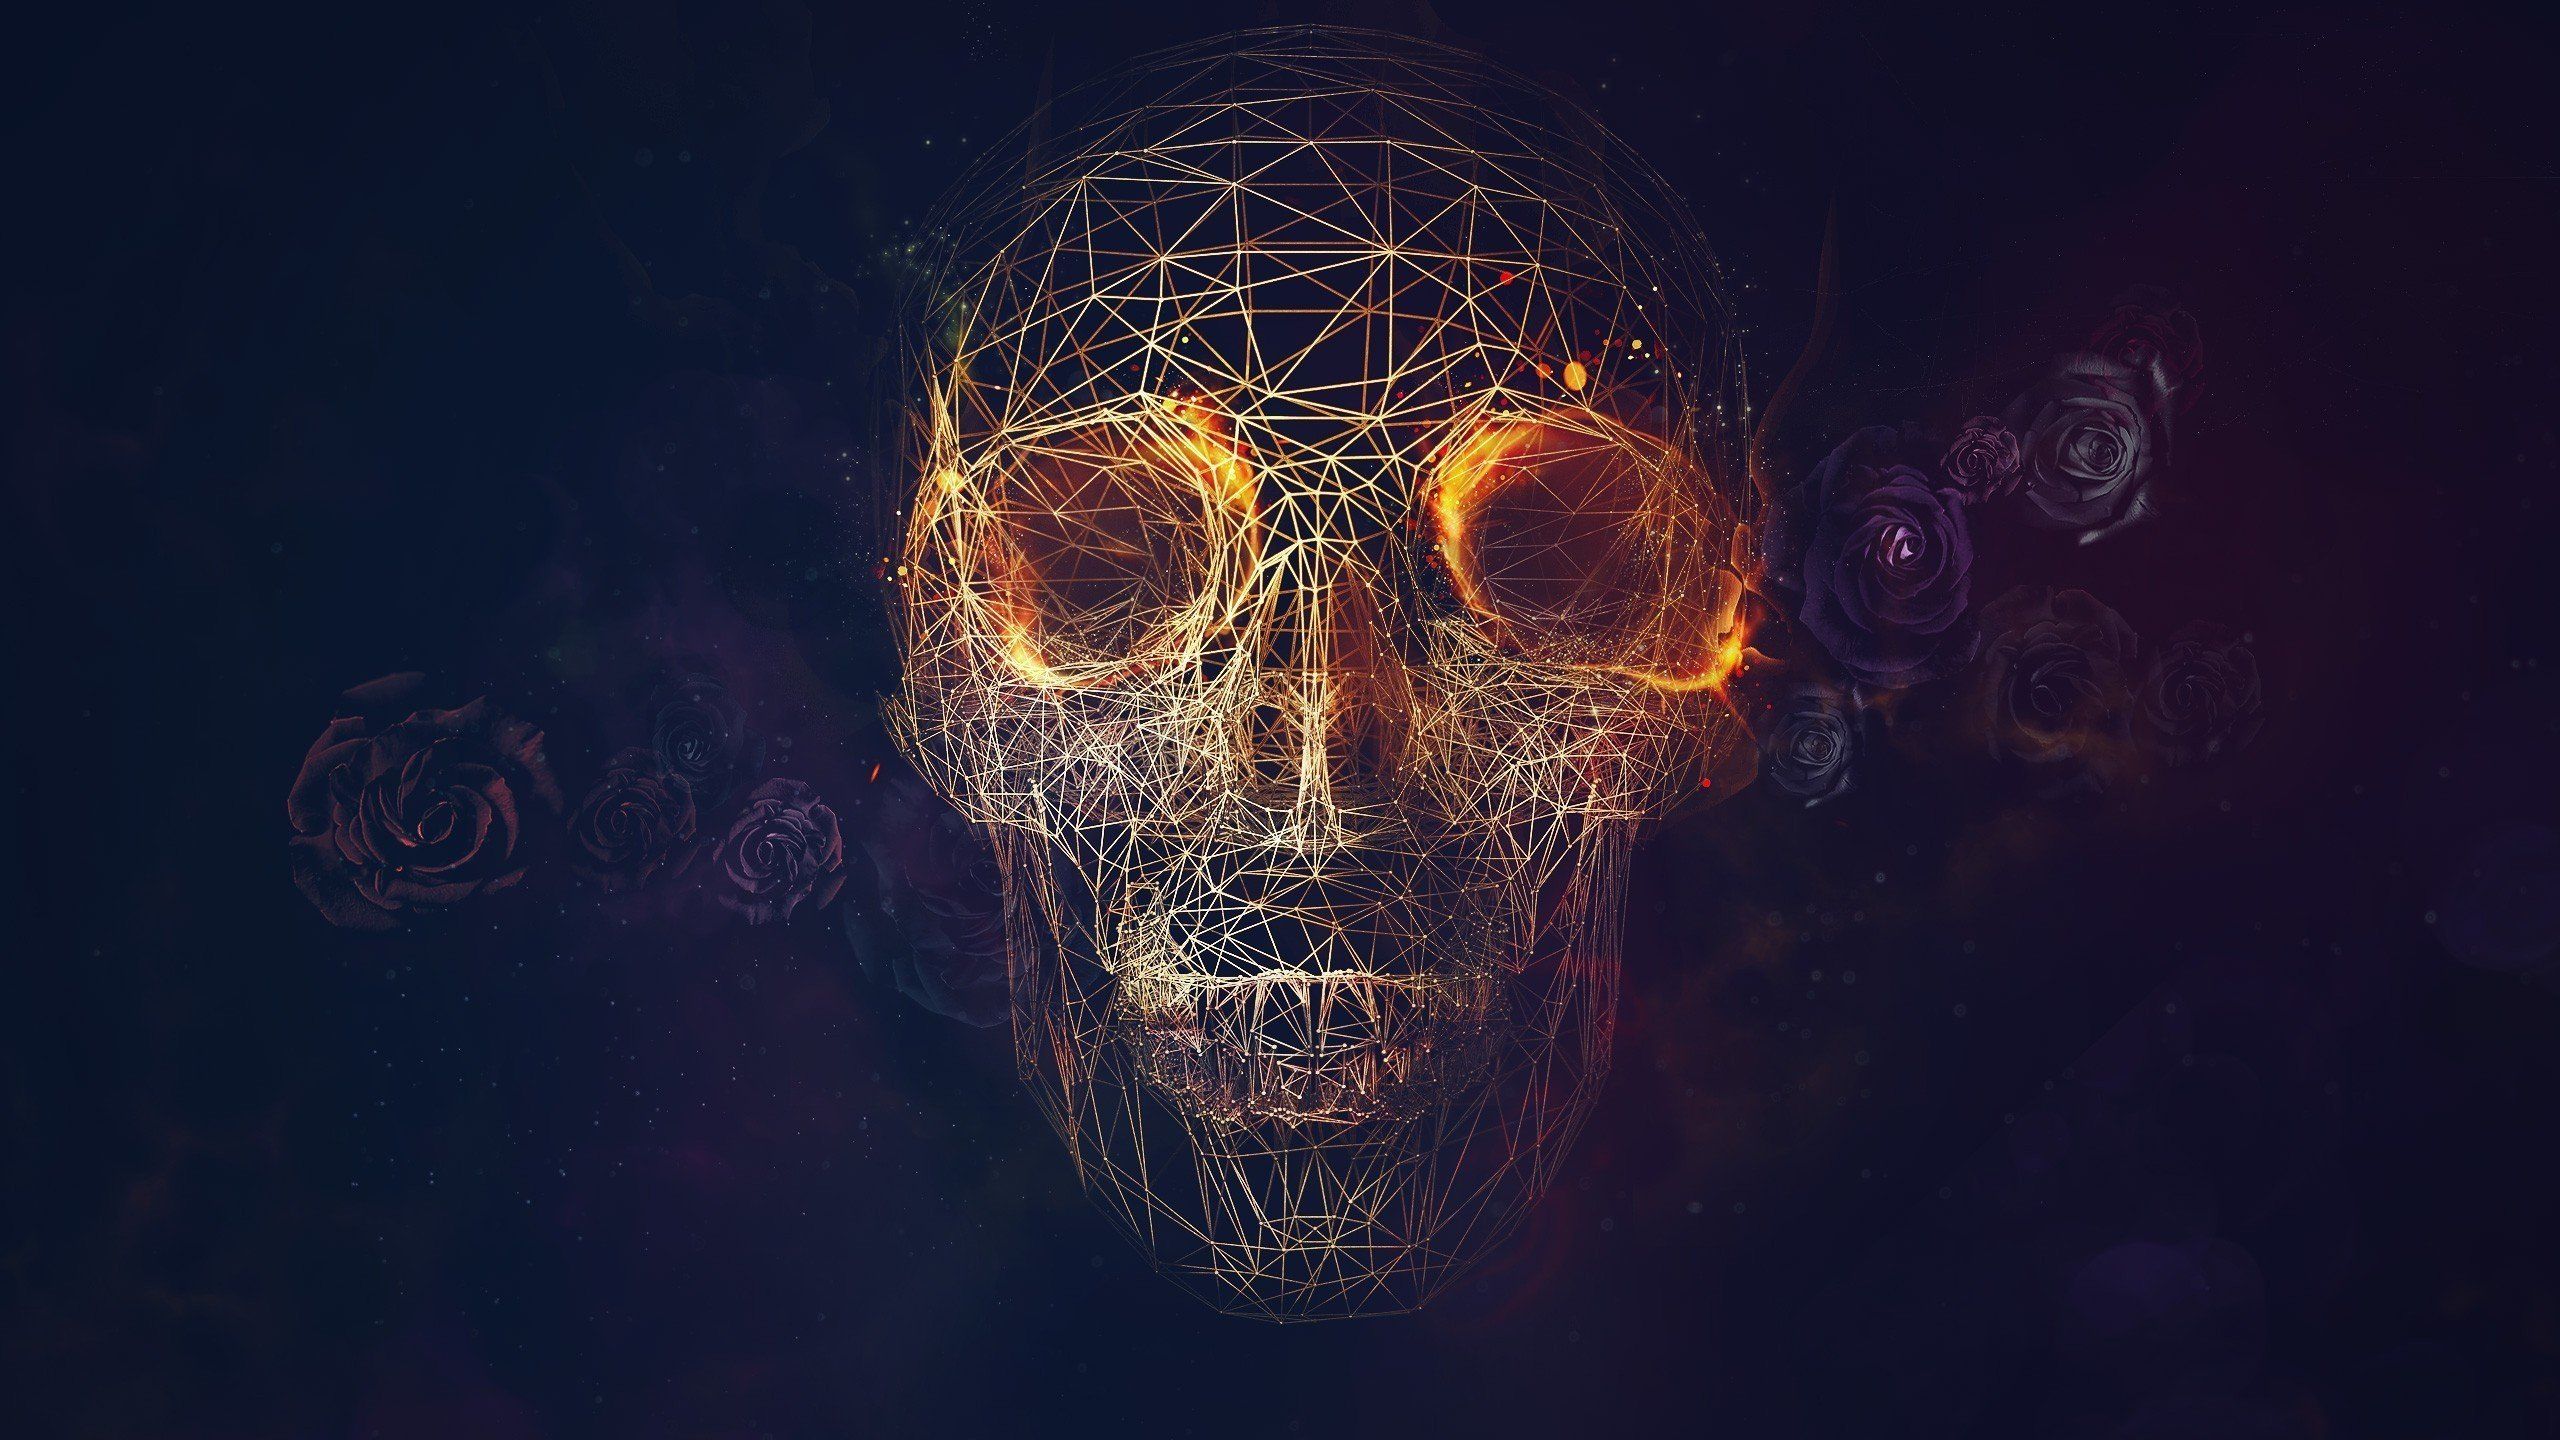 Skull 4K wallpaper for your desktop or mobile screen free